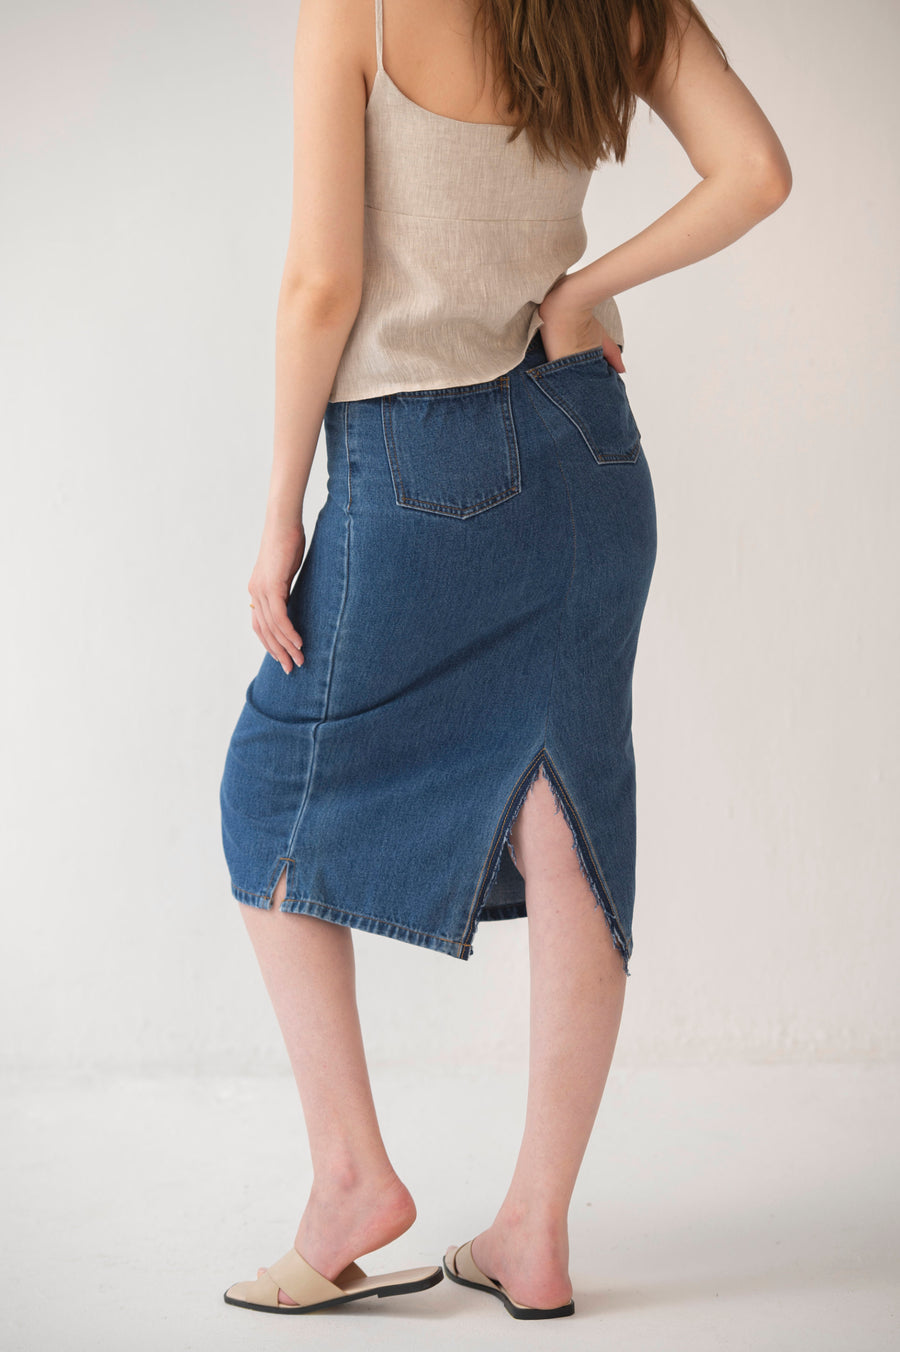 The REMADE Lara Midi Skirt